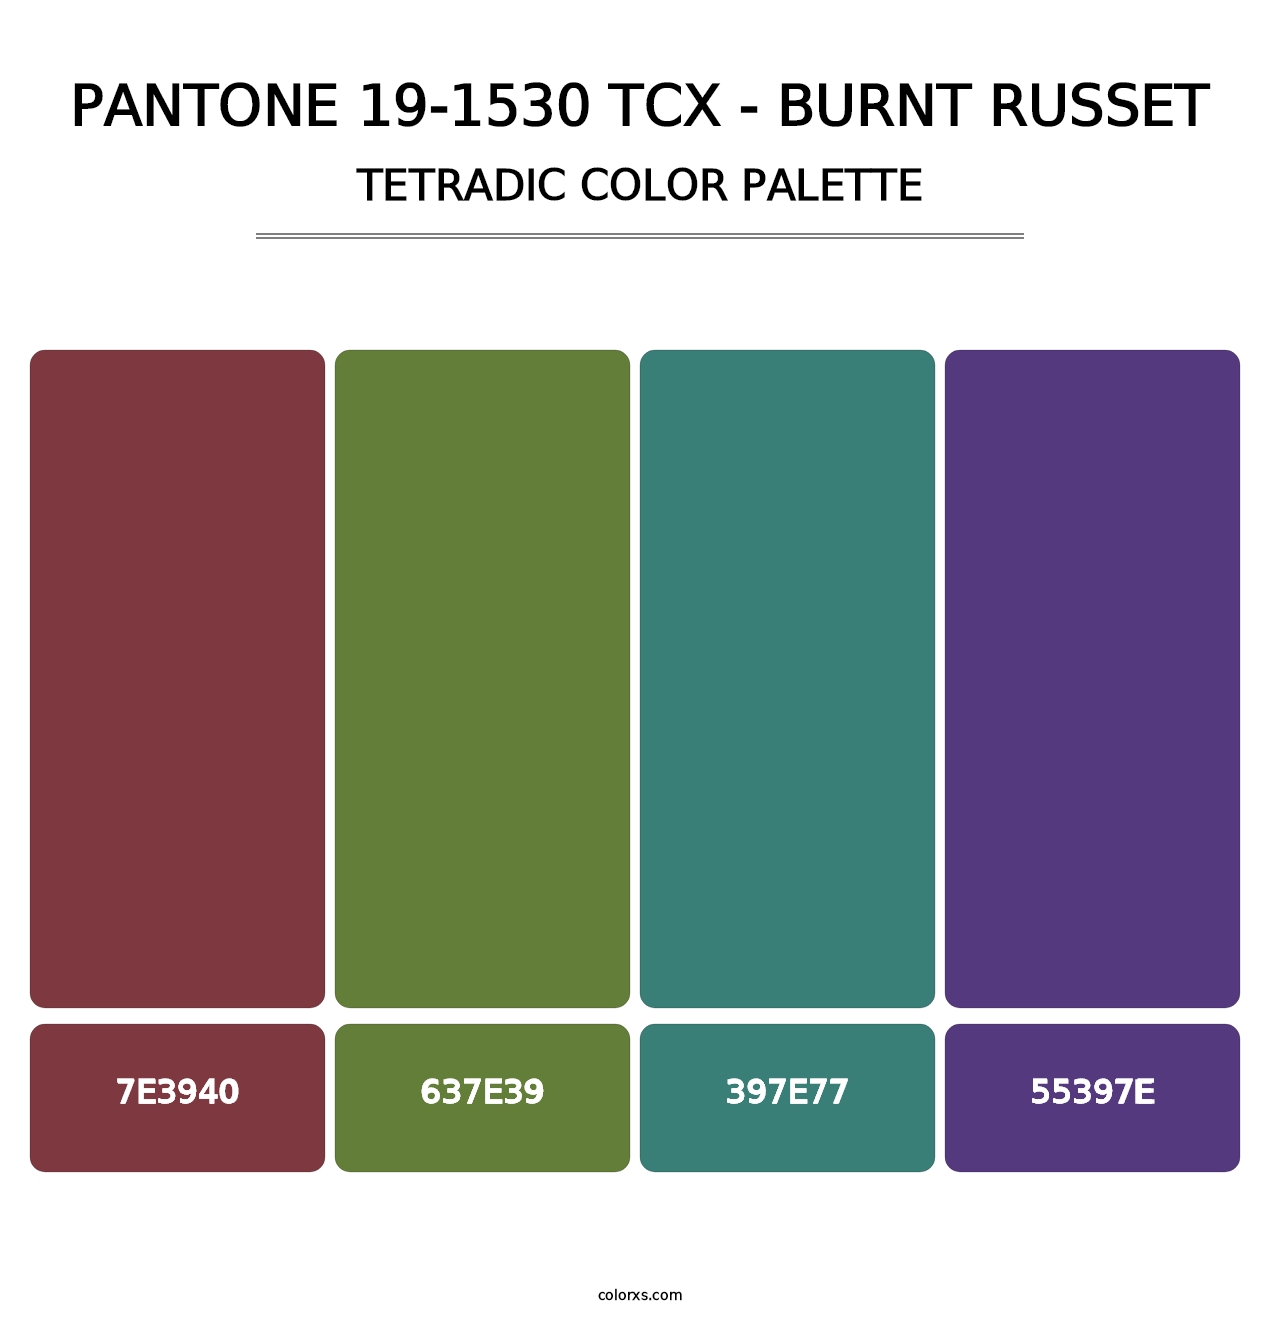 PANTONE 19-1530 TCX - Burnt Russet - Tetradic Color Palette